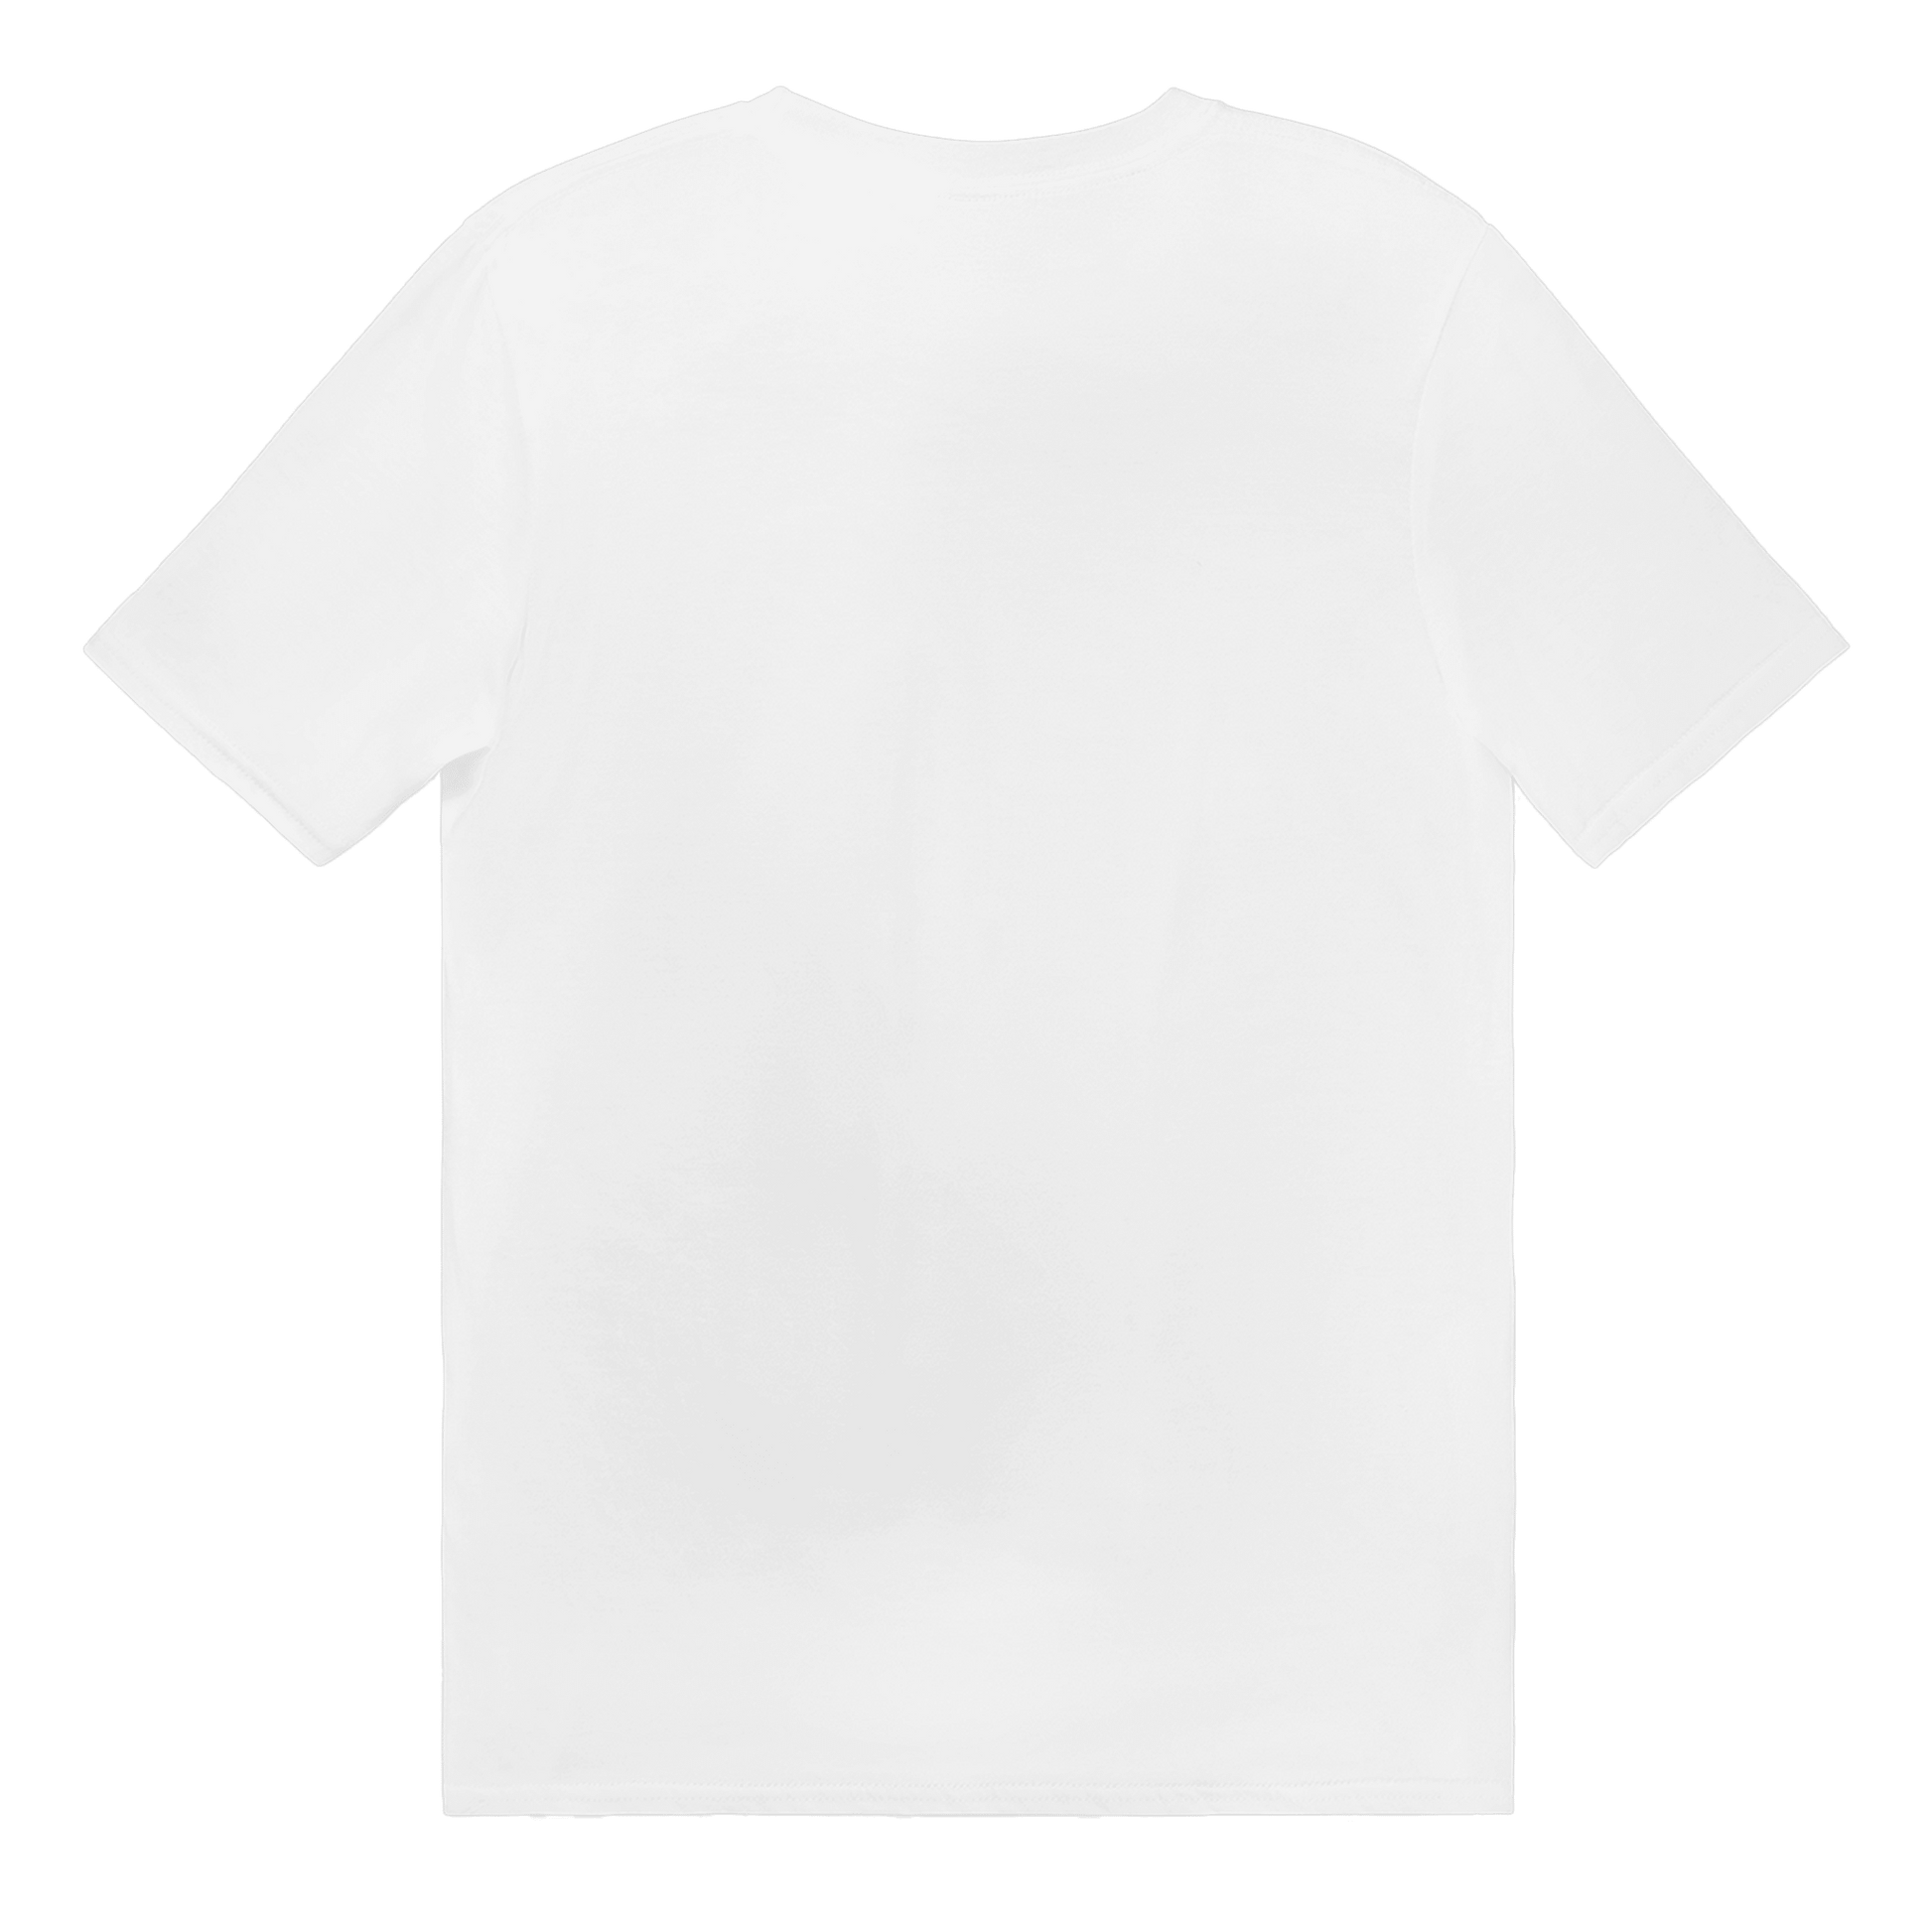 Månadens Medarbetare - T-shirt 